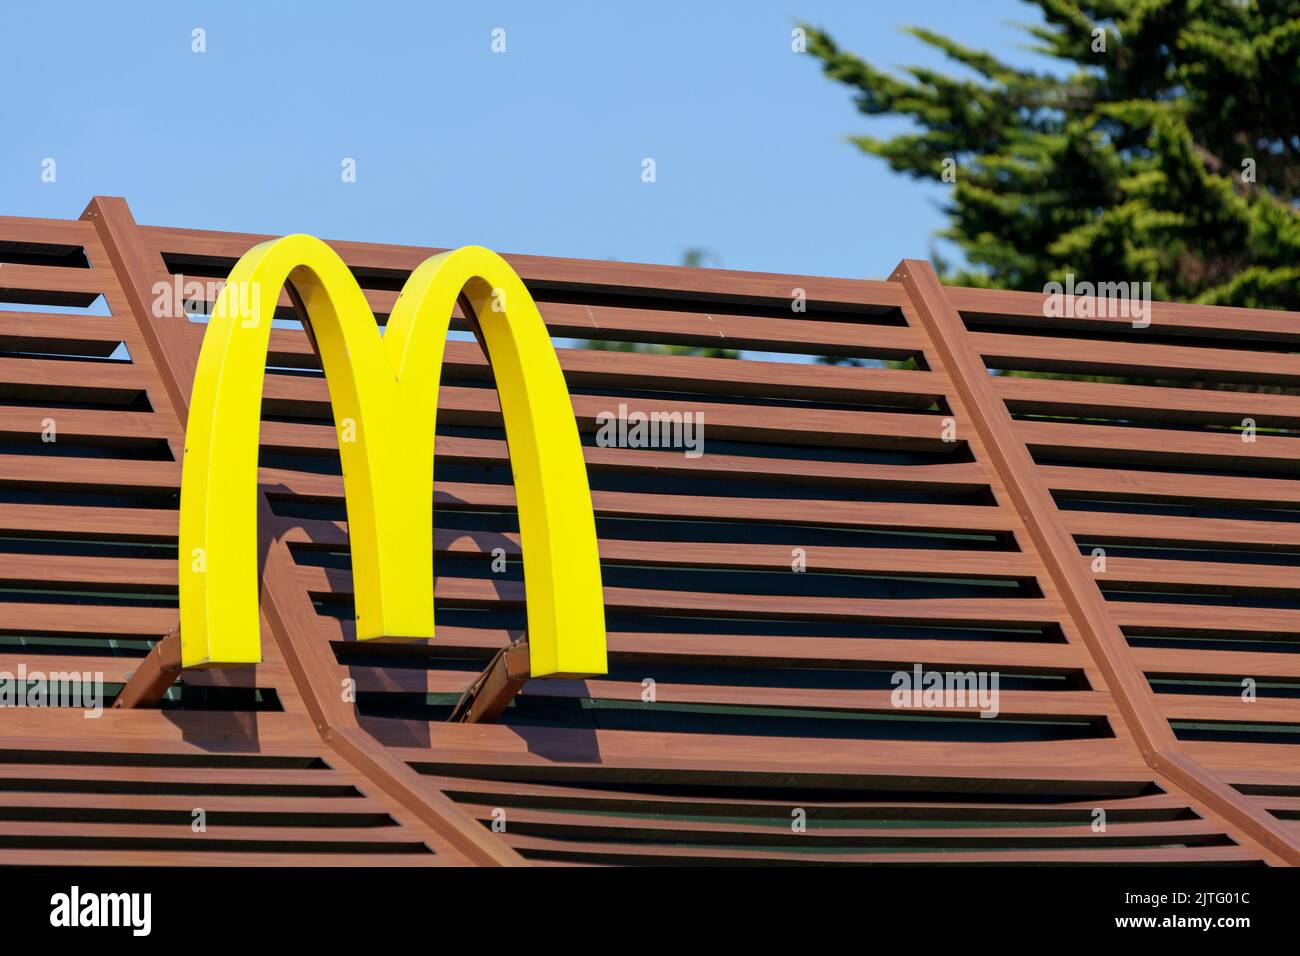 Morlaix, France - août 29 2022 : signe de McDonald's, une chaîne multinationale américaine de restaurants de restauration rapide pour hamburgers. Banque D'Images